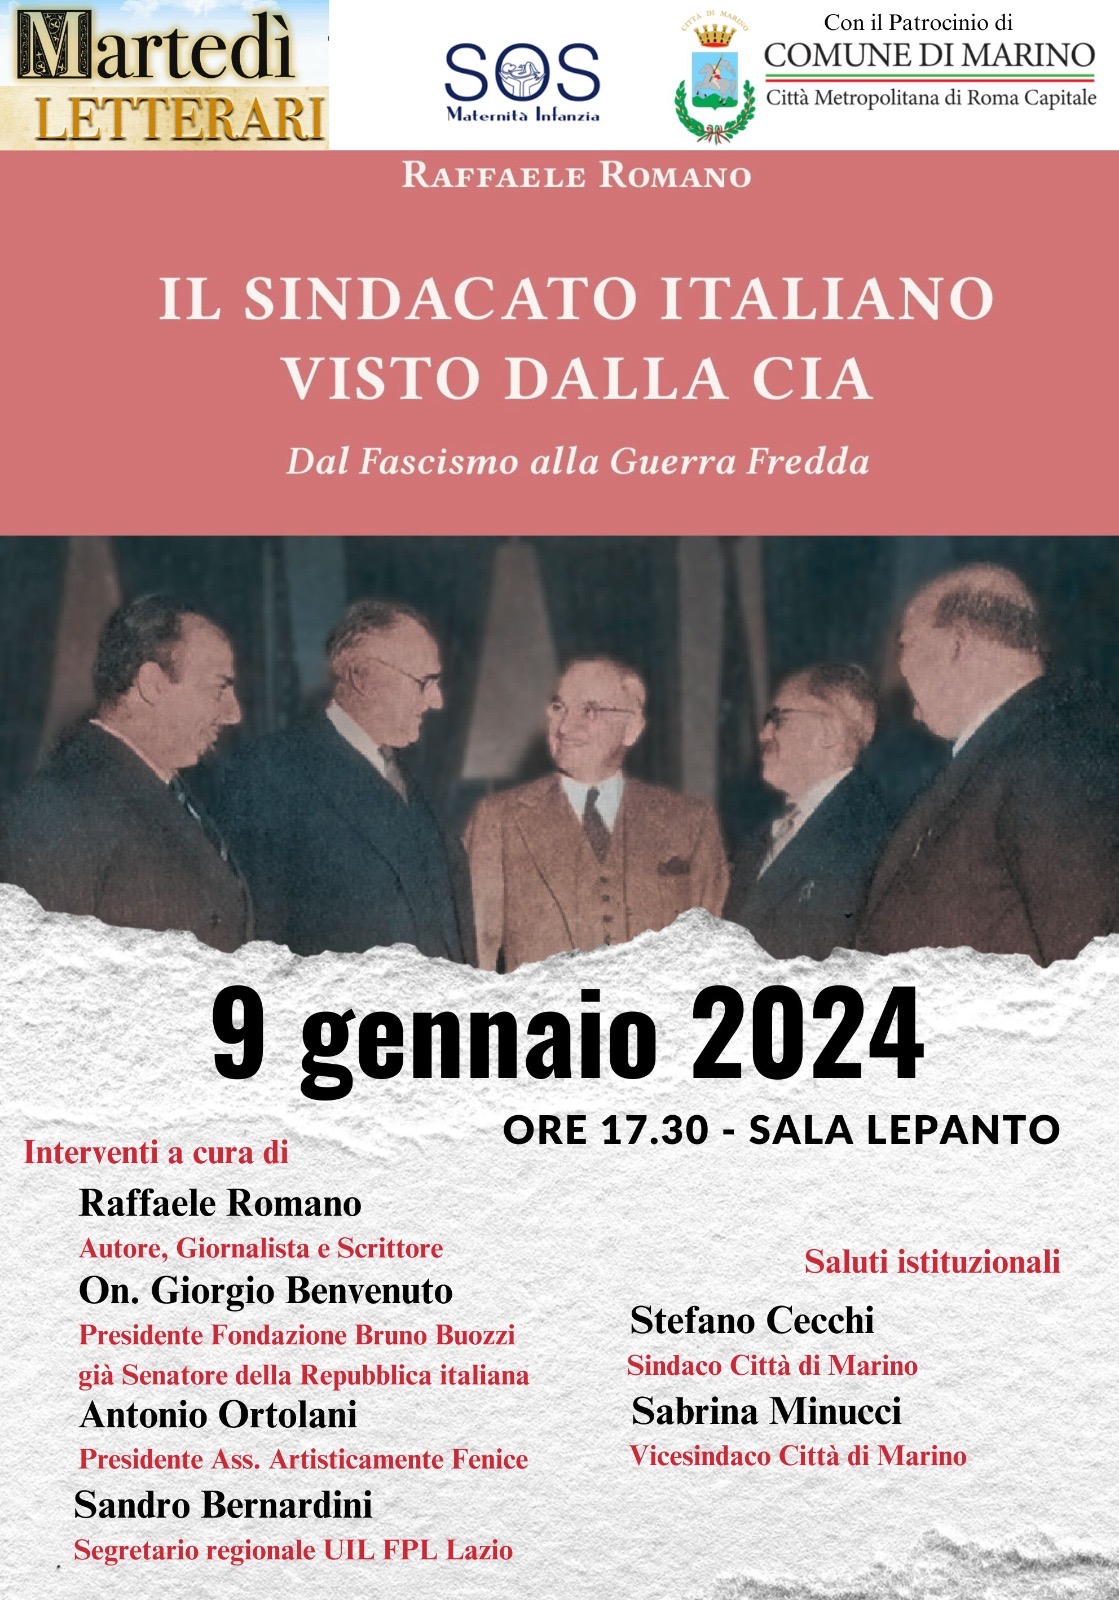 Martedì 09 gennaio 2024, ore 17.30, Marino (Roma). Presentazione del libro di ’Raffaele Romano ’Il sindacato italiano visto dalla CIA’